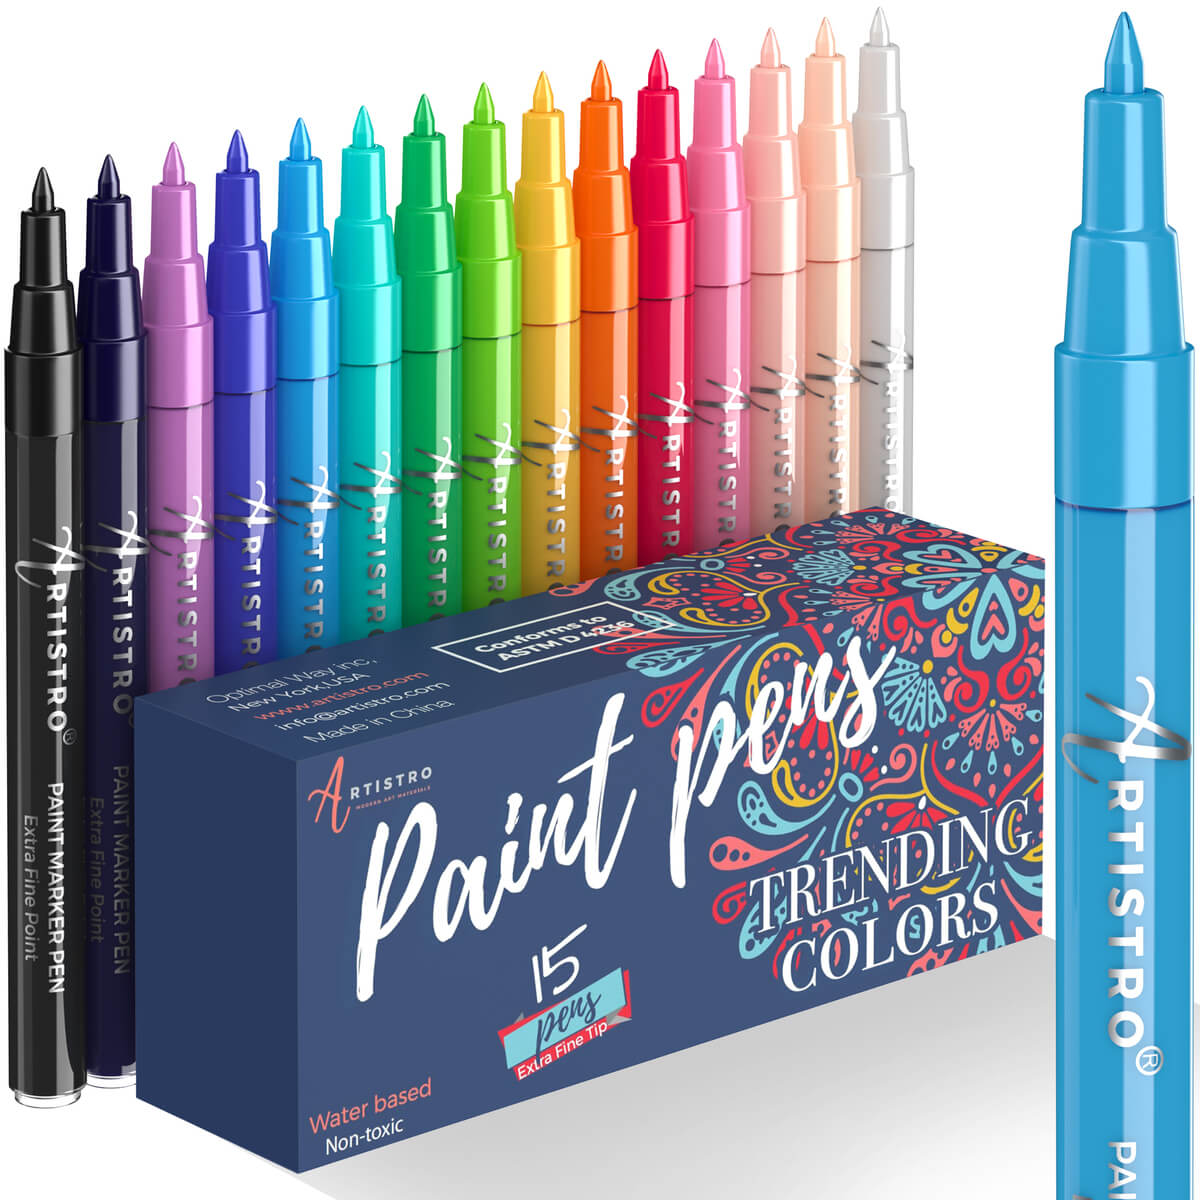 17 Artistro Black Paint Pens in Bundle Set